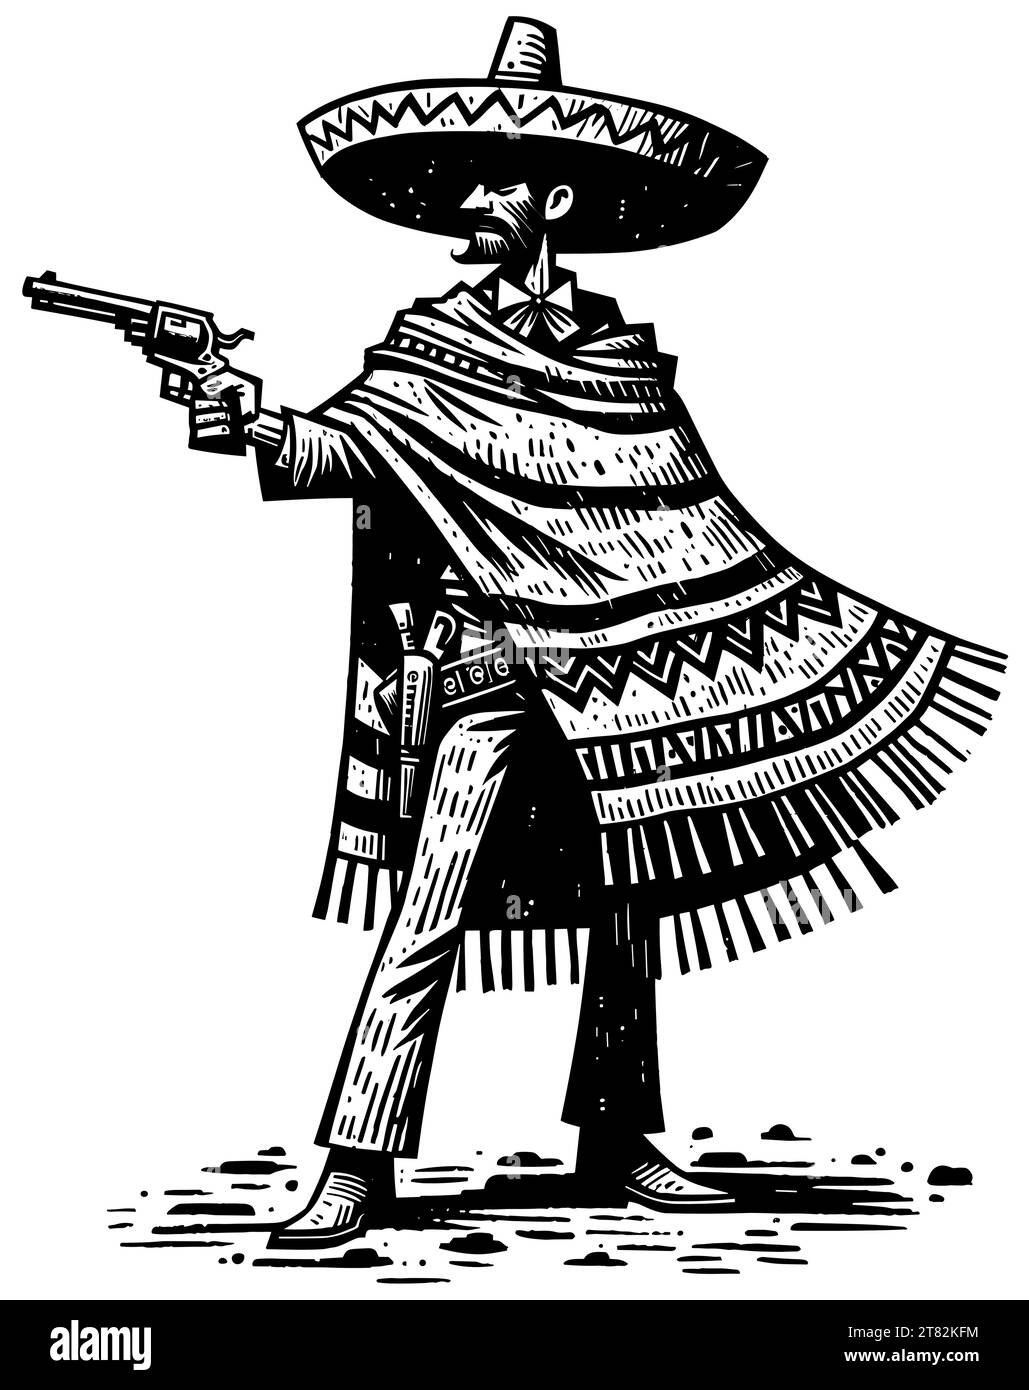 Linolschnitt-Illustration von Vaquero mit Sombrero und Poncho, die auf einen Revolver zielen. Stock Vektor